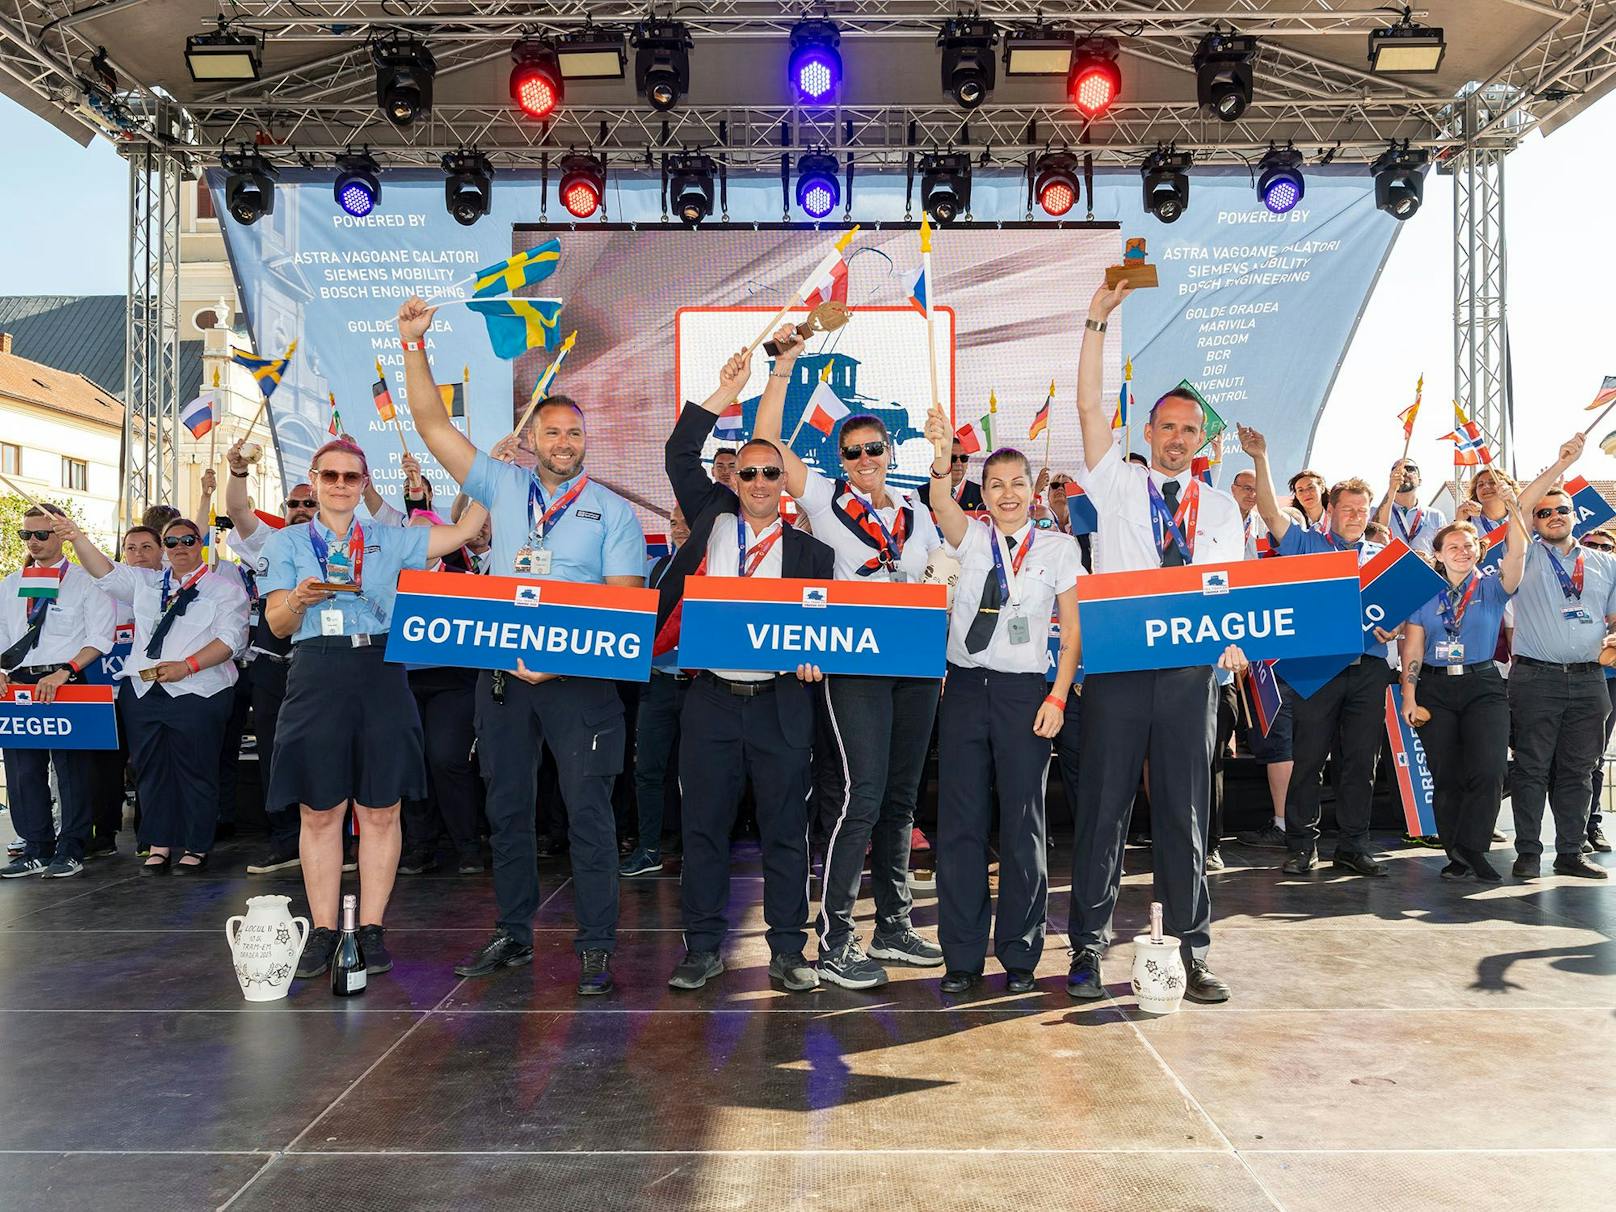 Große Freude bei den Wiener Fahrern – sie sicherten sich den Europameister-Titel im rumänischen Oradea.